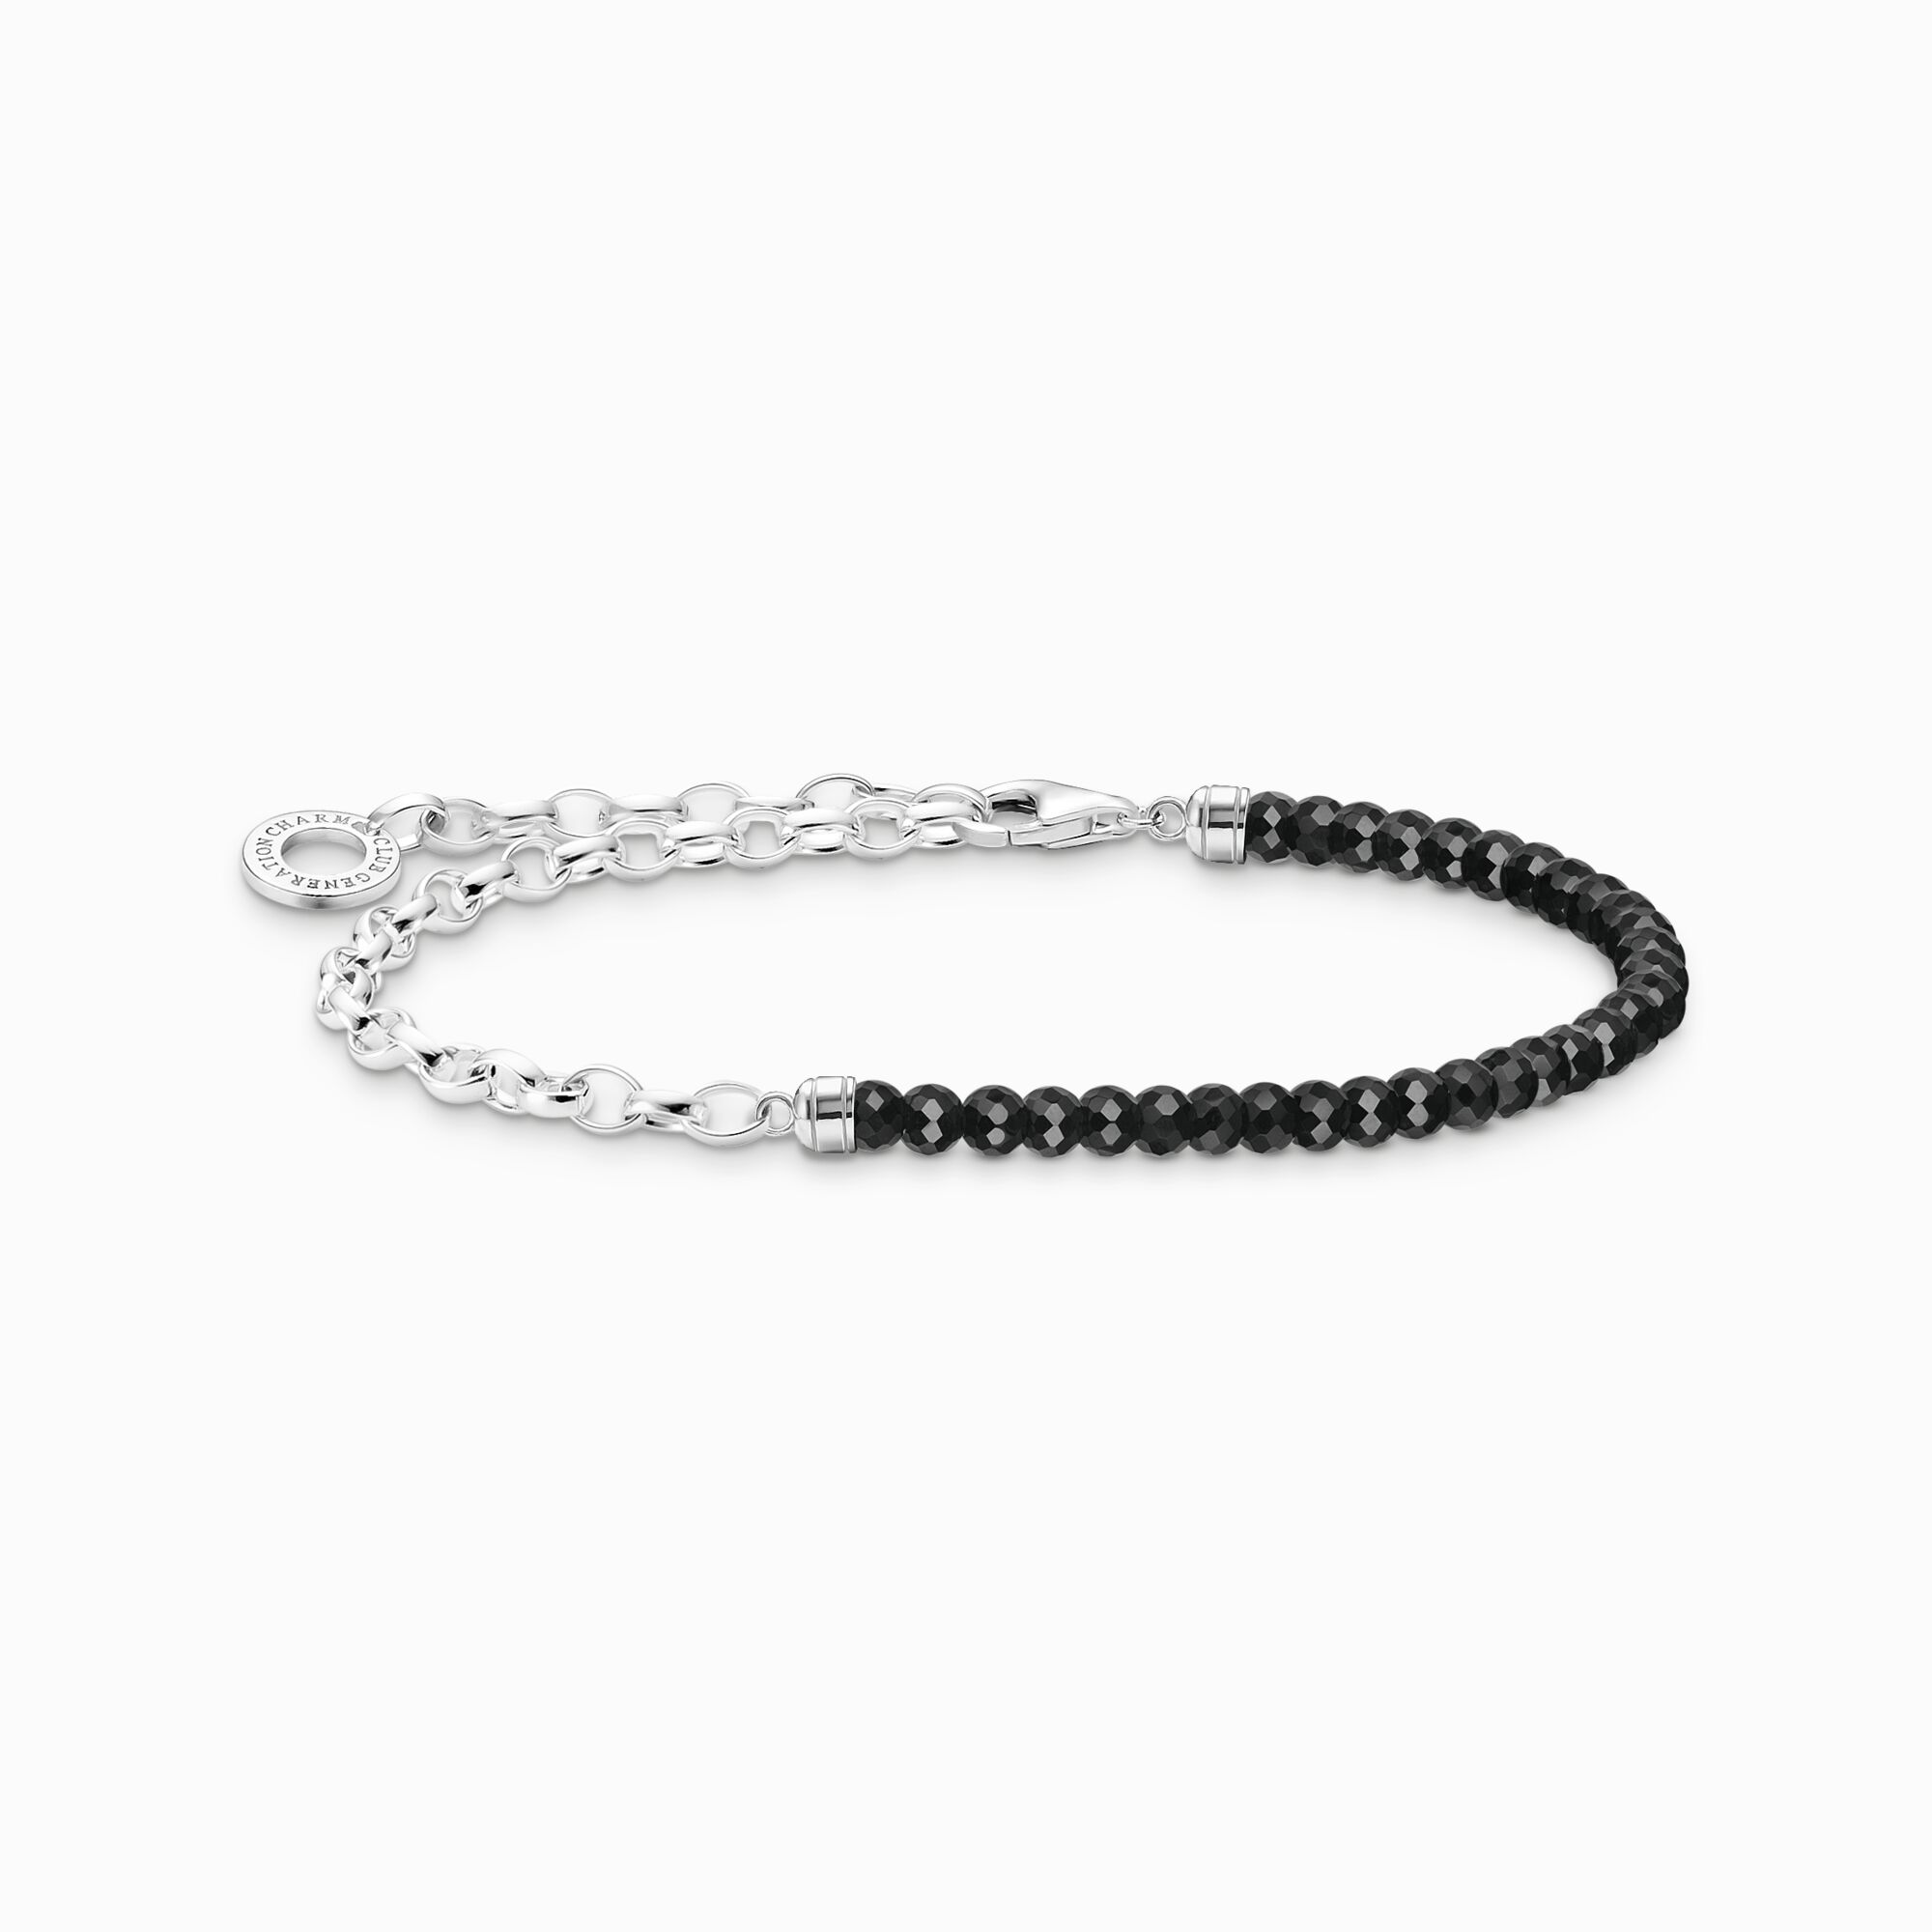 Thomas Sabo Charm Club Sterling SilverBlack Onyx Chain Charm Bracelet